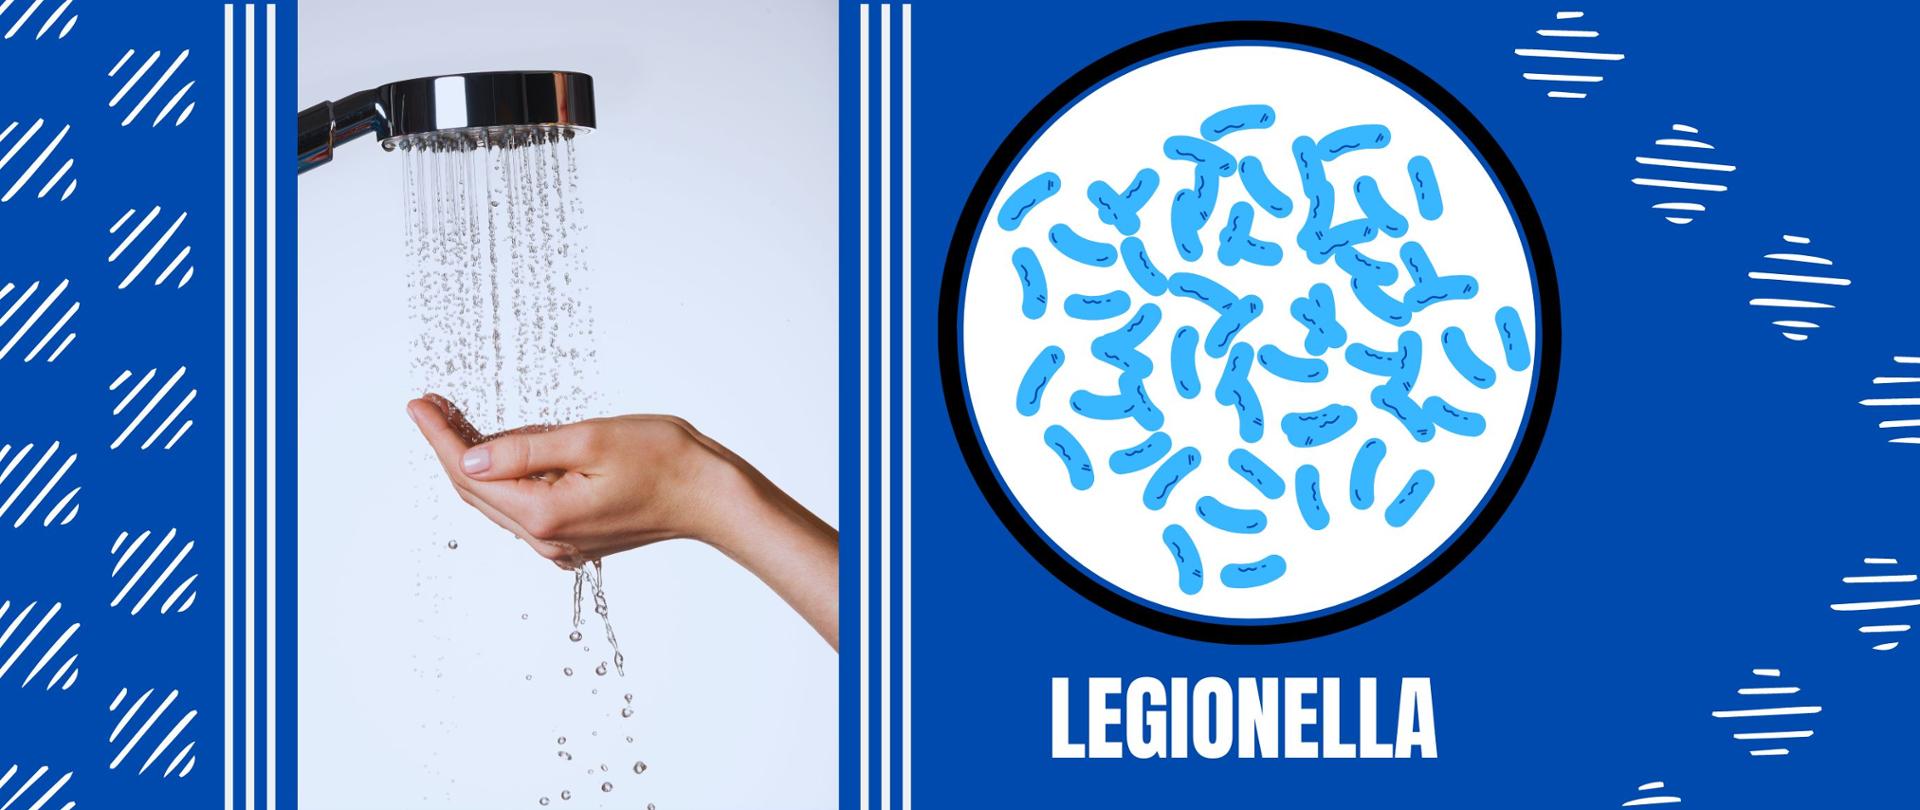 Słuchawka prysznicowa z lejącą się na dłoń wodą. Po prawej stronie grafika wektorowa obrazująca niebieskie pałeczki bakterii. Na dole napis "Legionella"